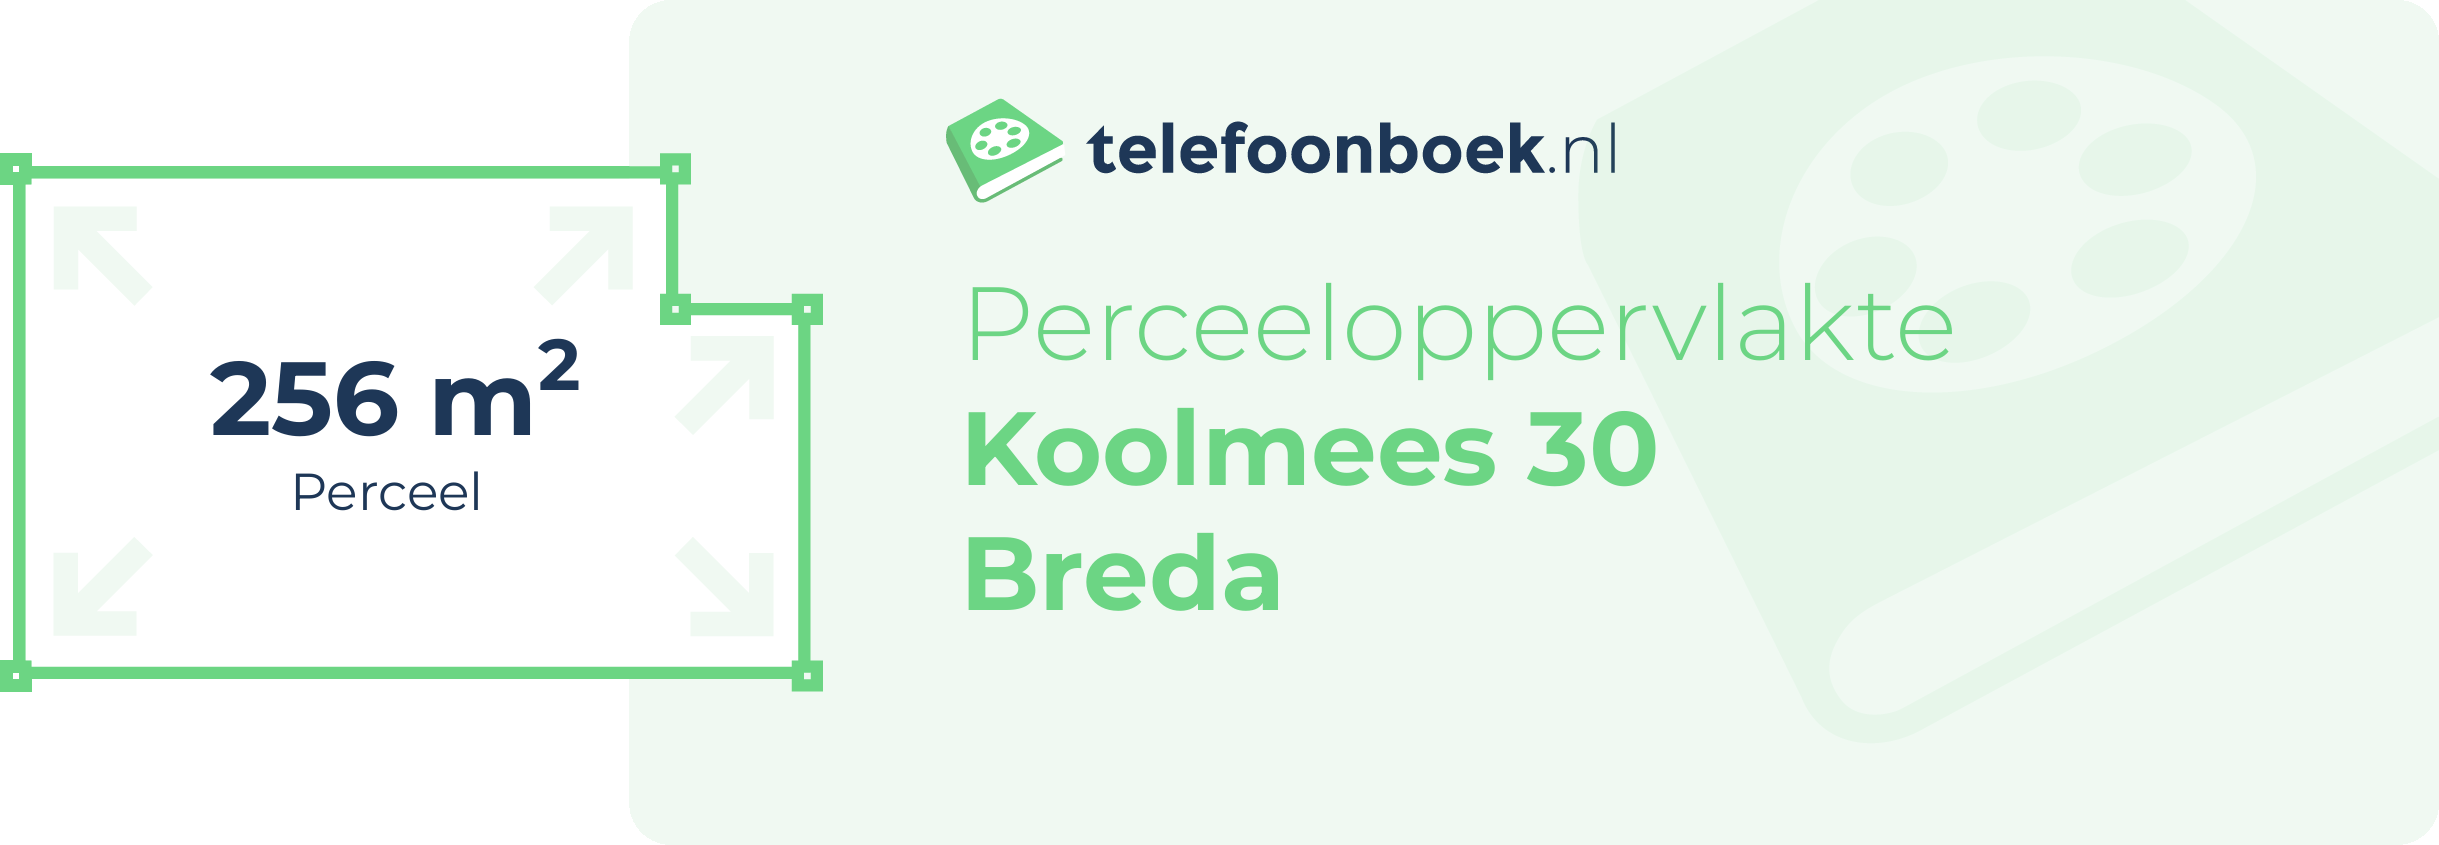 Perceeloppervlakte Koolmees 30 Breda